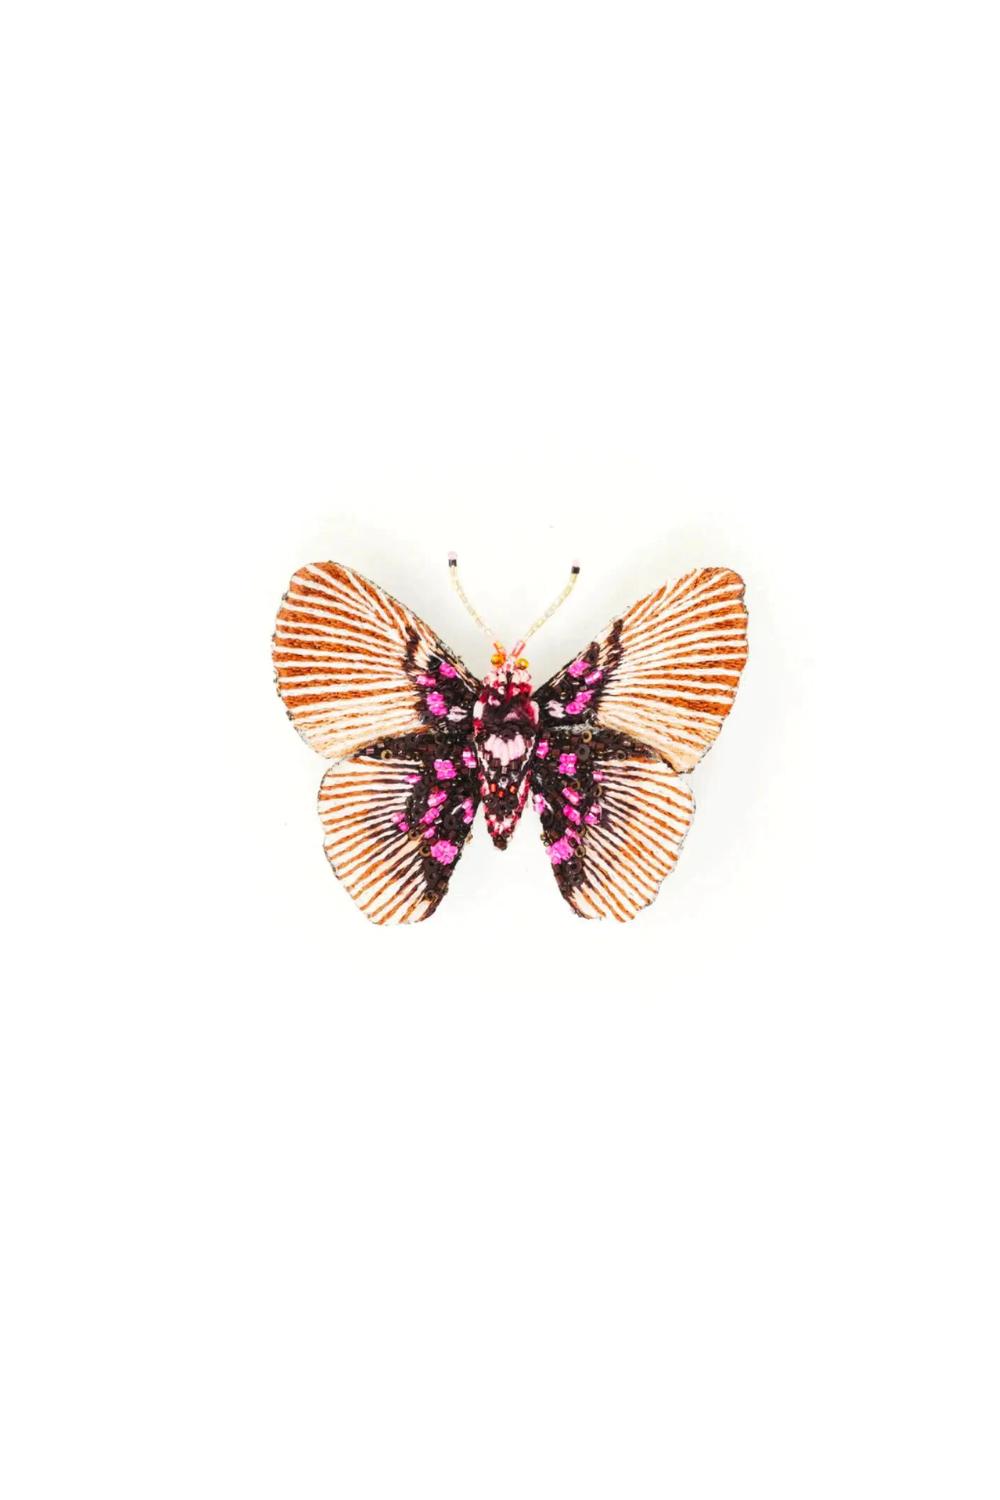 Variable False Acraea Butterfly